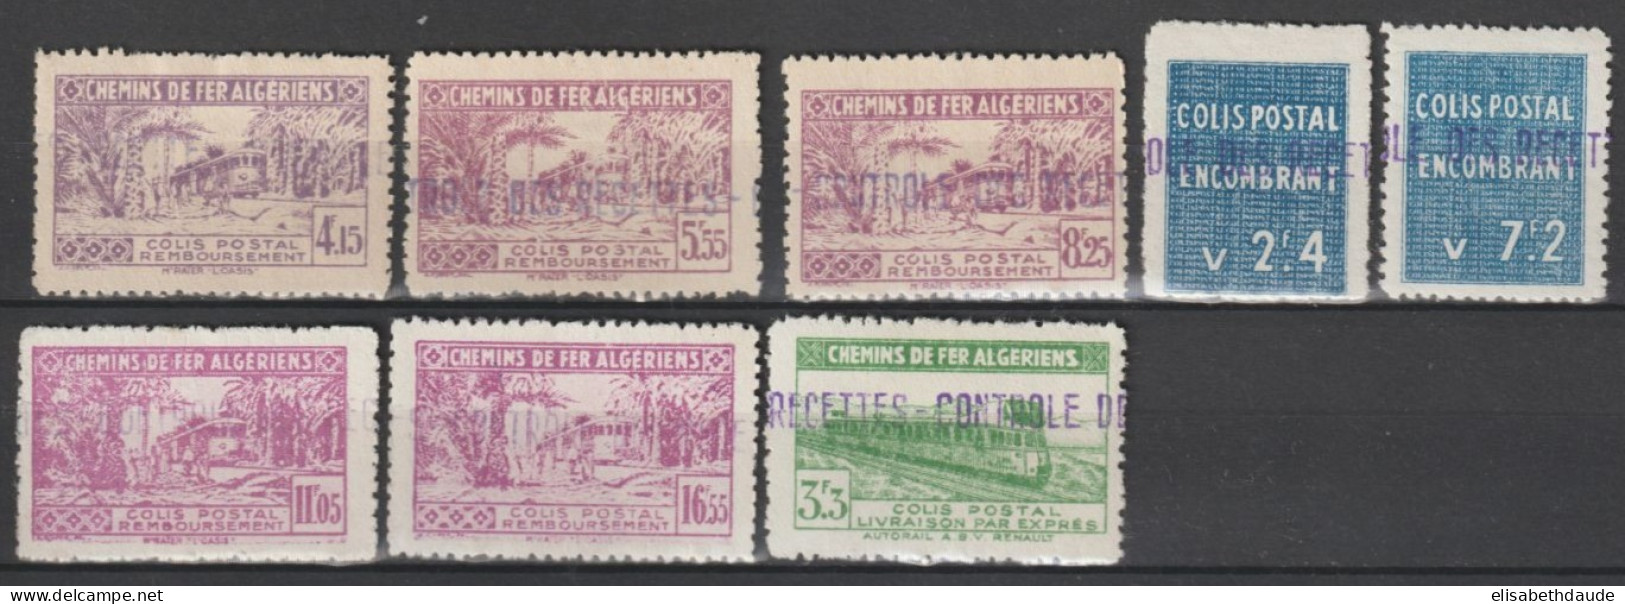 ALGERIE - 1941 - COLIS POSTAUX - YVERT N°90//94 (*) + 89 + 96/97 * MLH - COTE = 69 EUR - Paquetes Postales